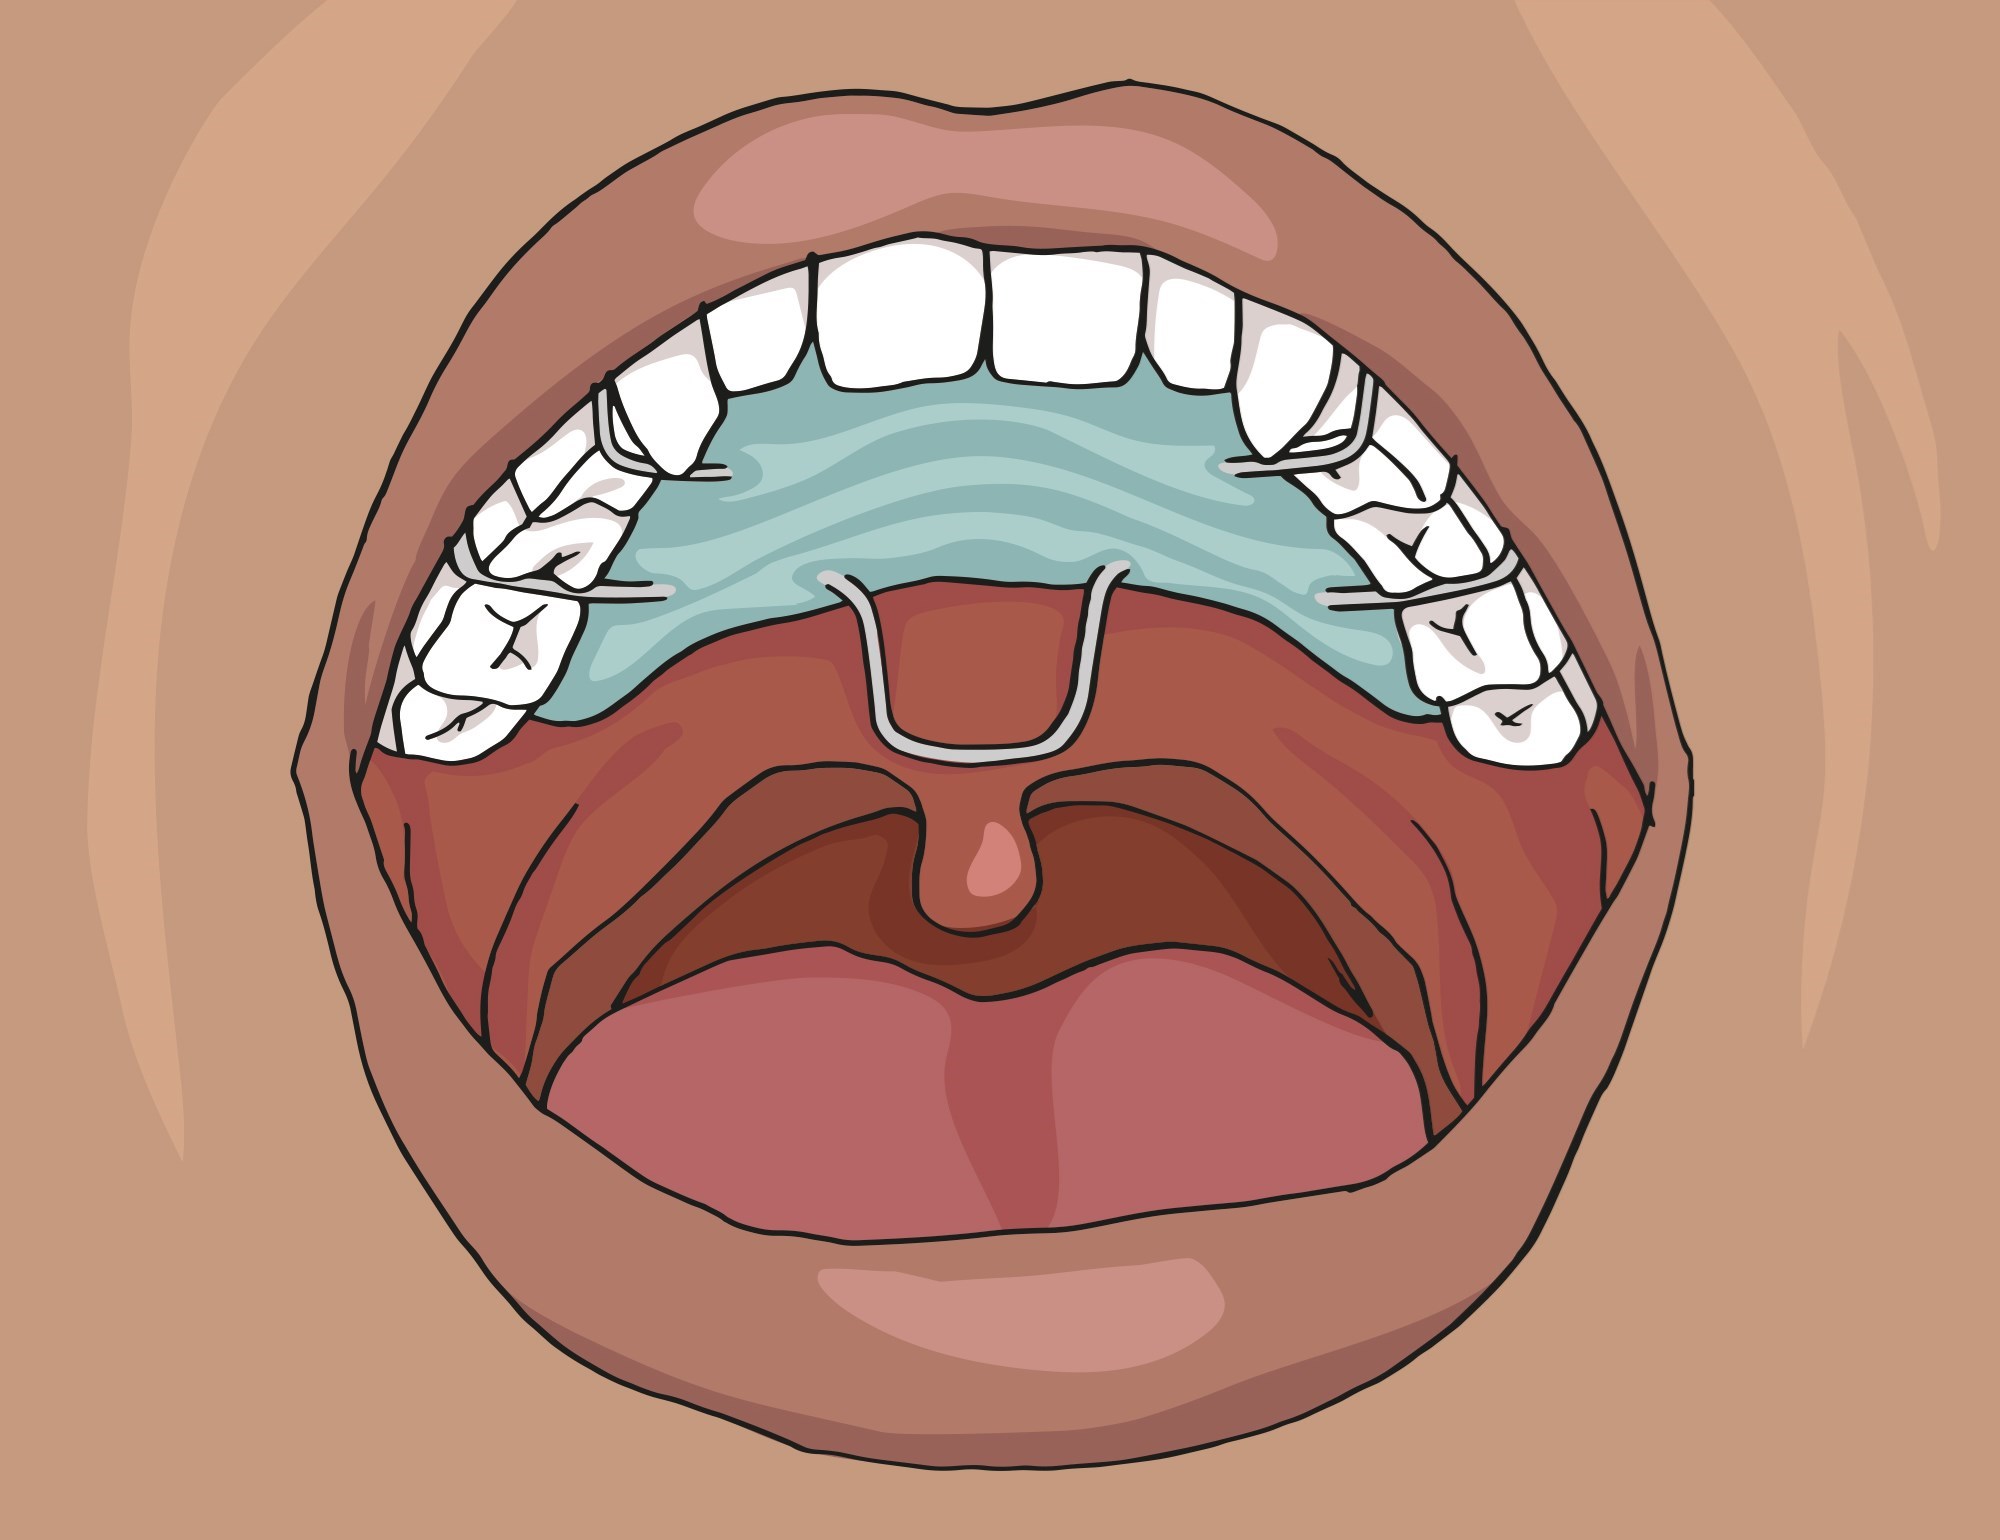 På bilden syns en öppen mun med en gomplatta i gommen. 